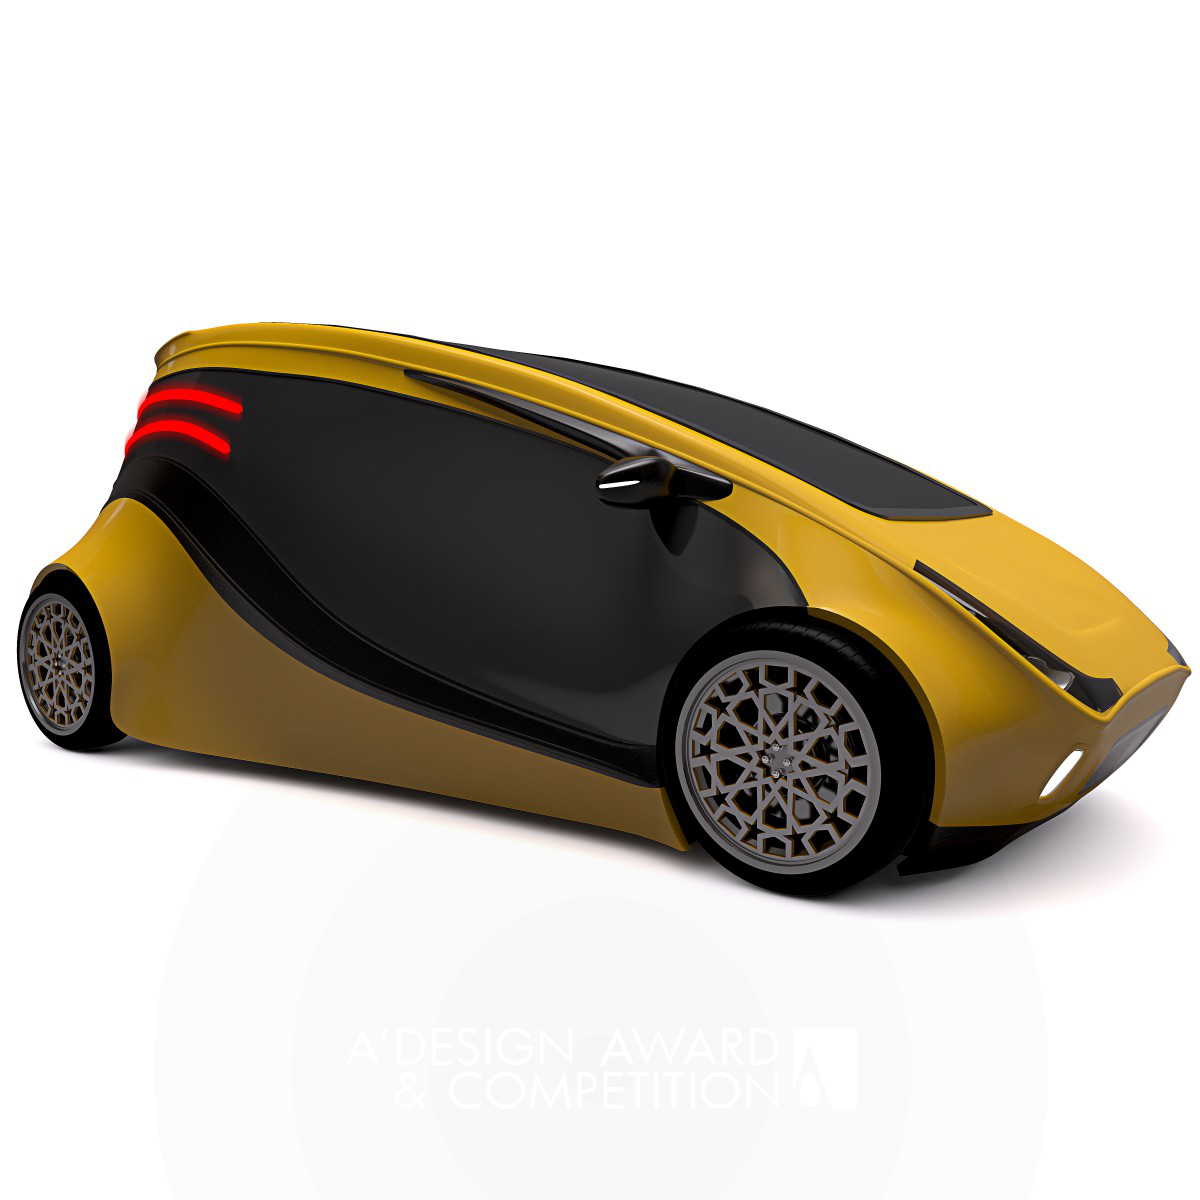 Murat Gedik Unveils the MG Assos Electric Car Concept